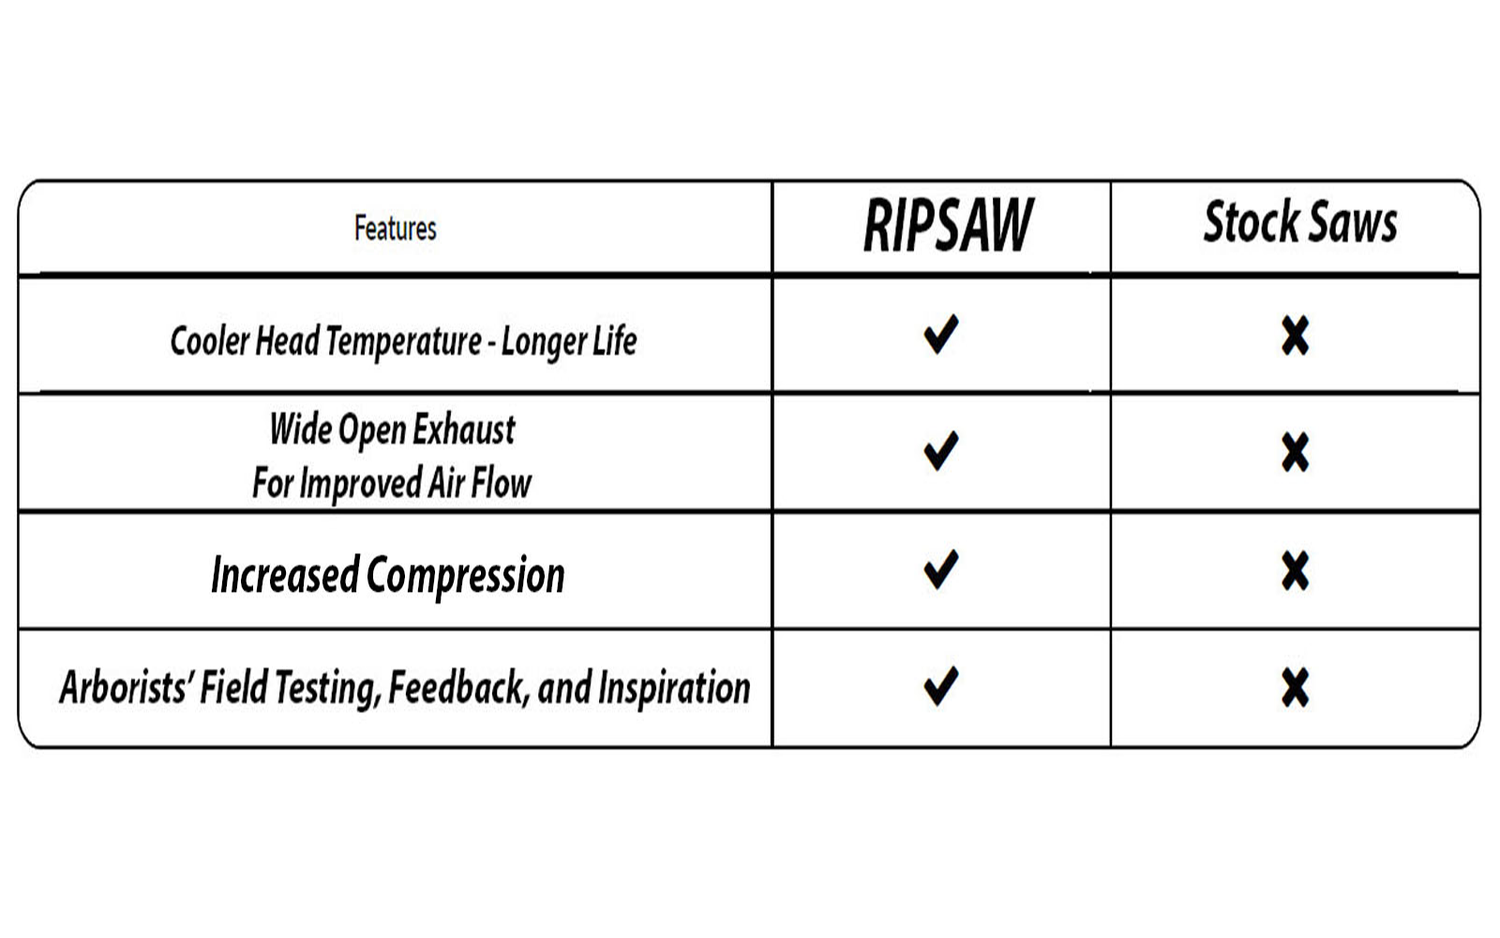 RIPSAW Competitor Comparison